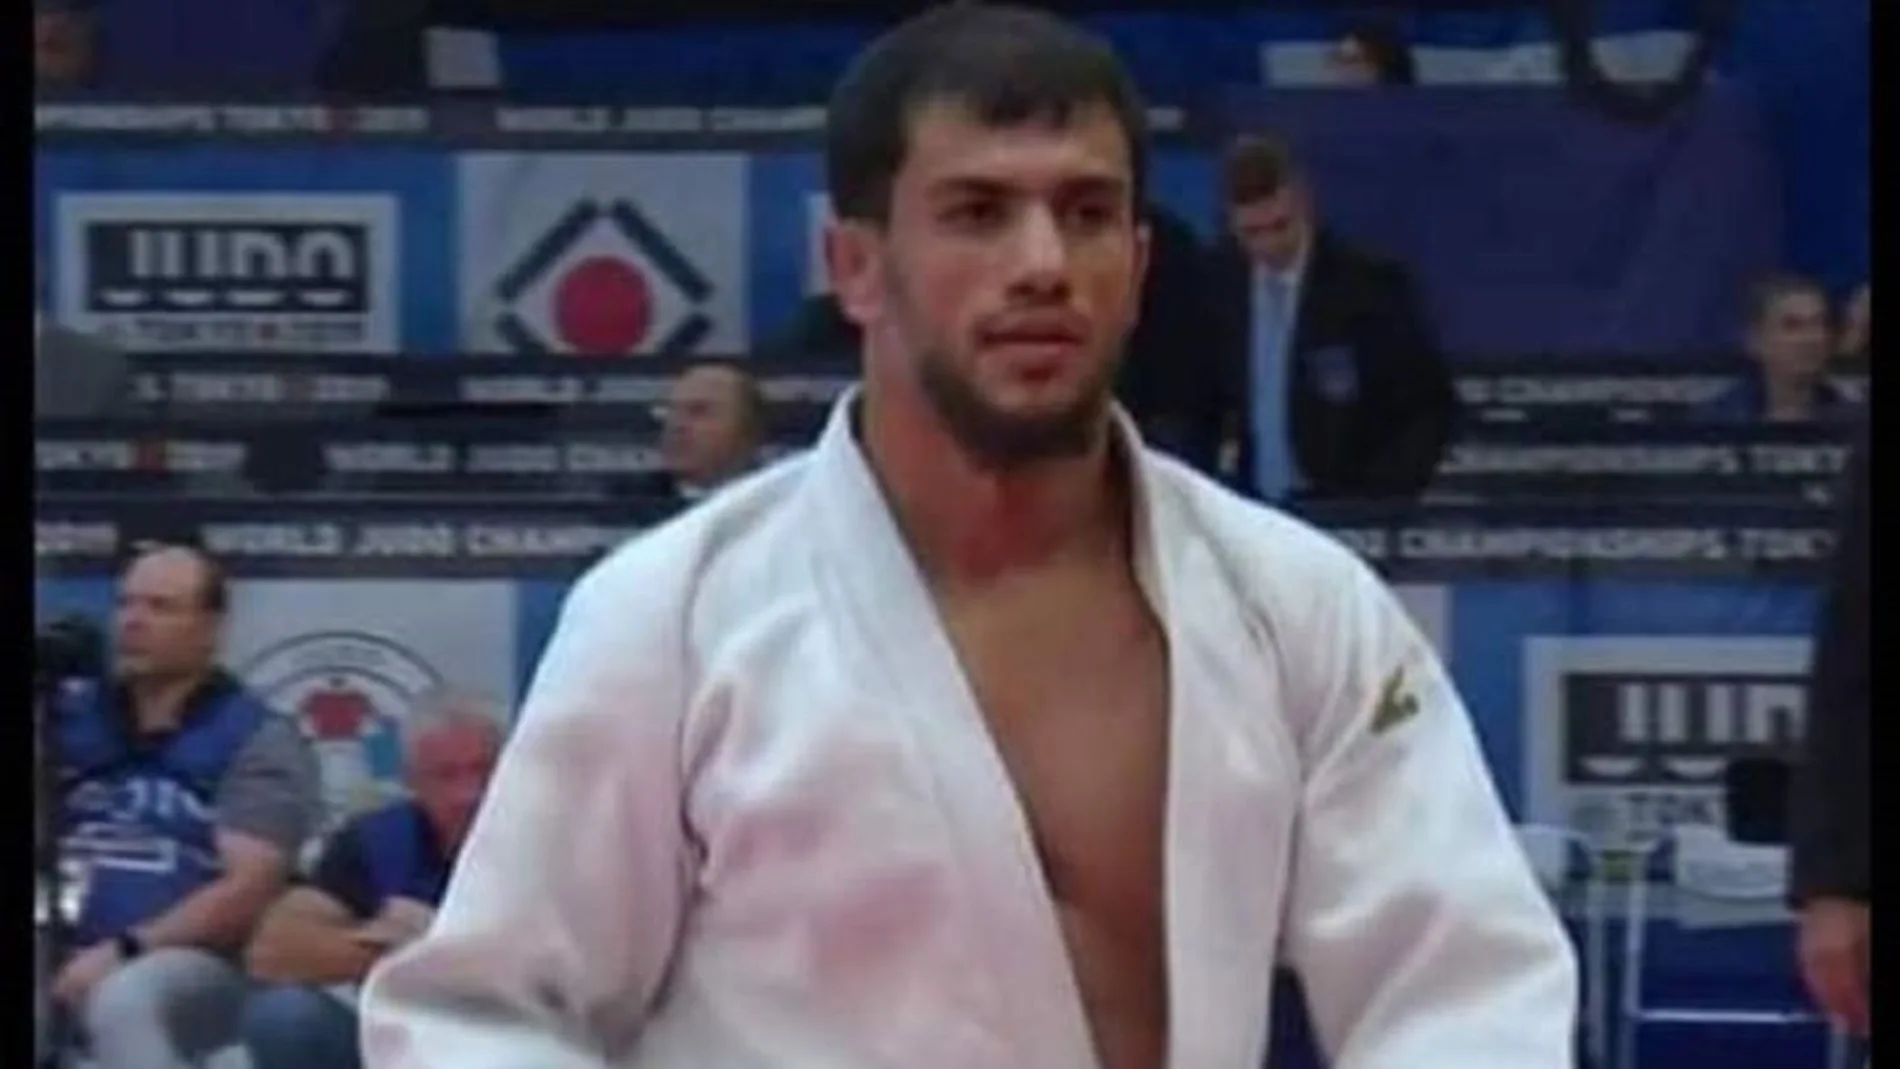 Fethi Nourine, judoca argelino, se retira de los Juegos Olímpicos para no enfrentarse con un israelí